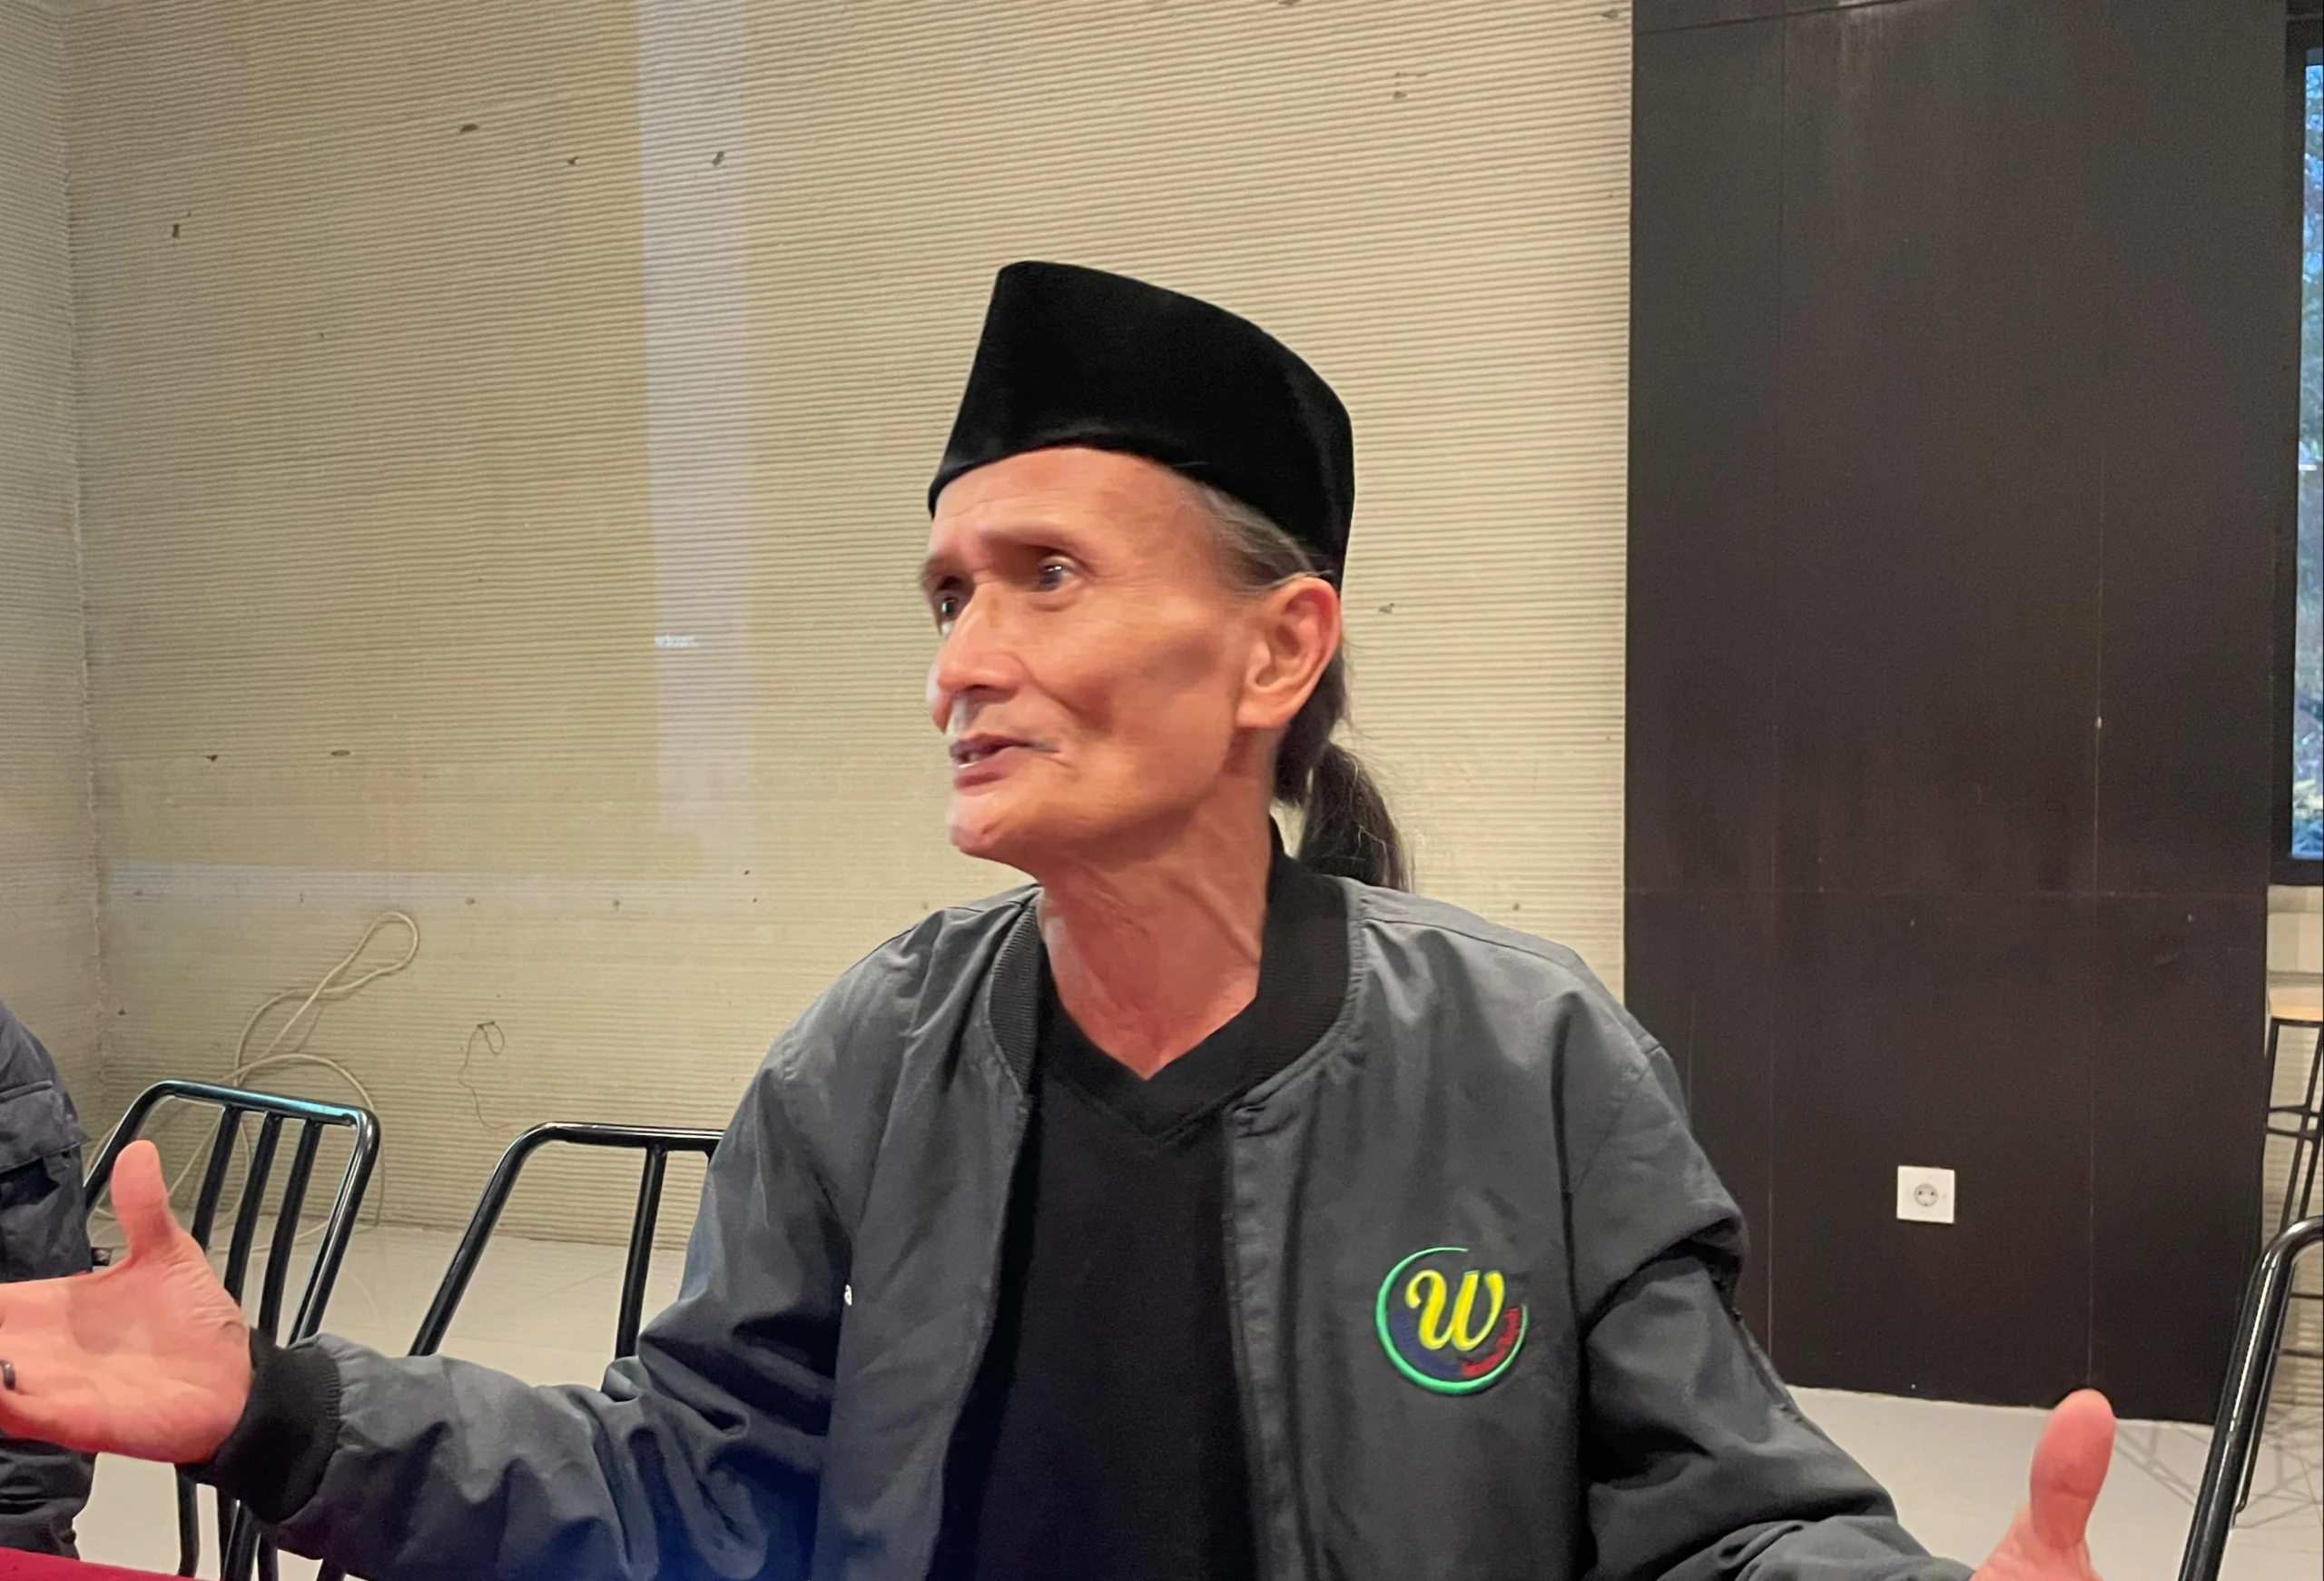 Tokoh masyarakat Kabupaten Bandung Barat, Kustiwa Kartawira. Senin (10/6). Dok Jabar Ekspres